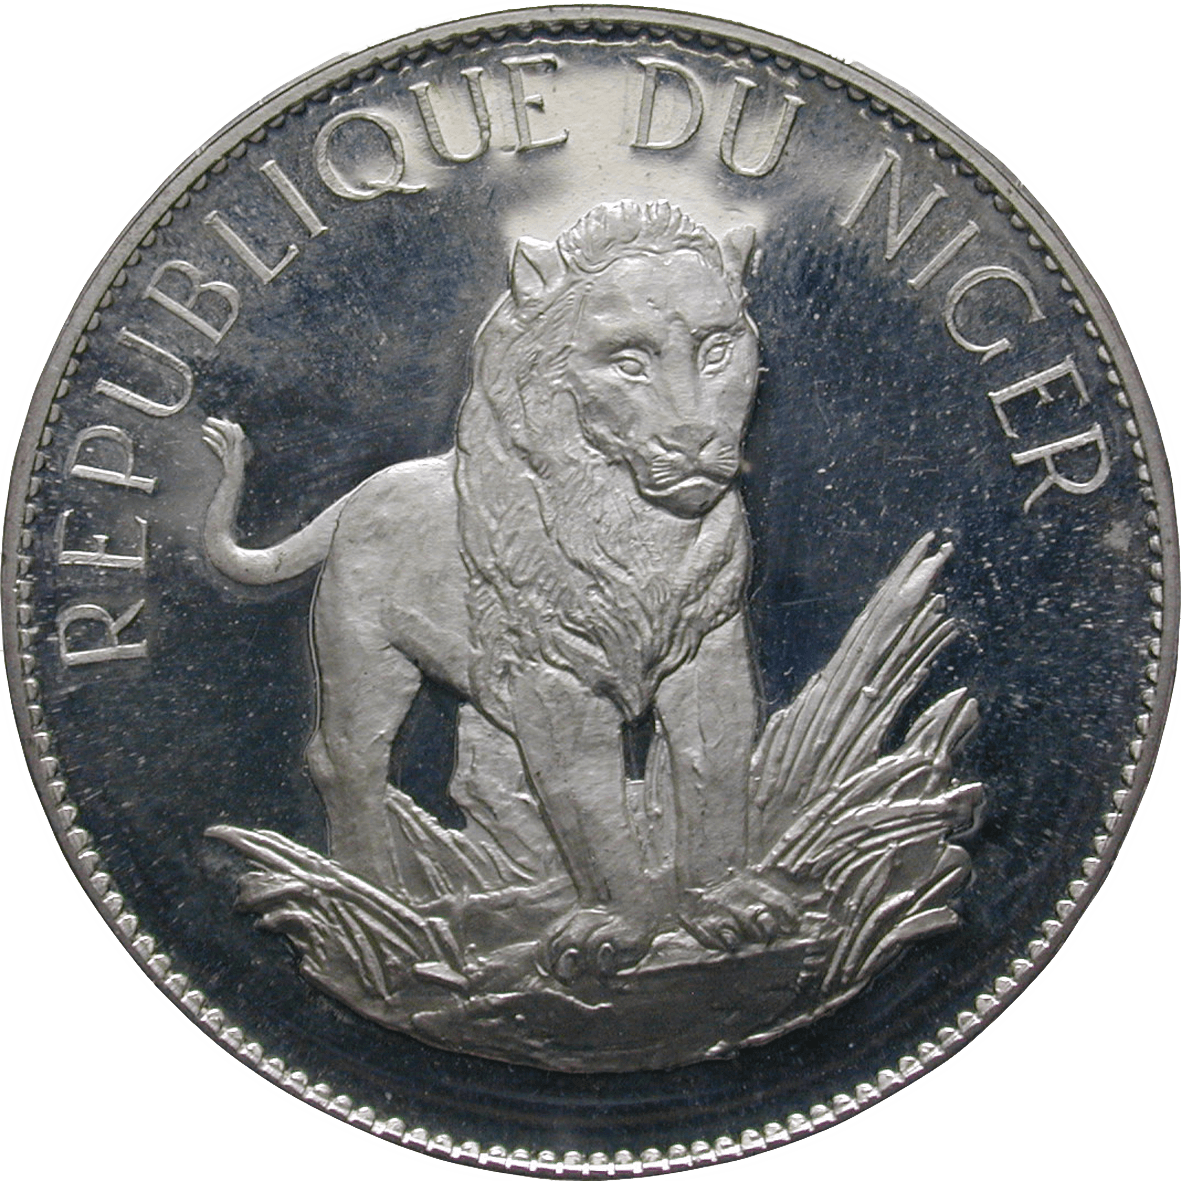 Republic of Niger, 10 Francs 1968 (obverse)